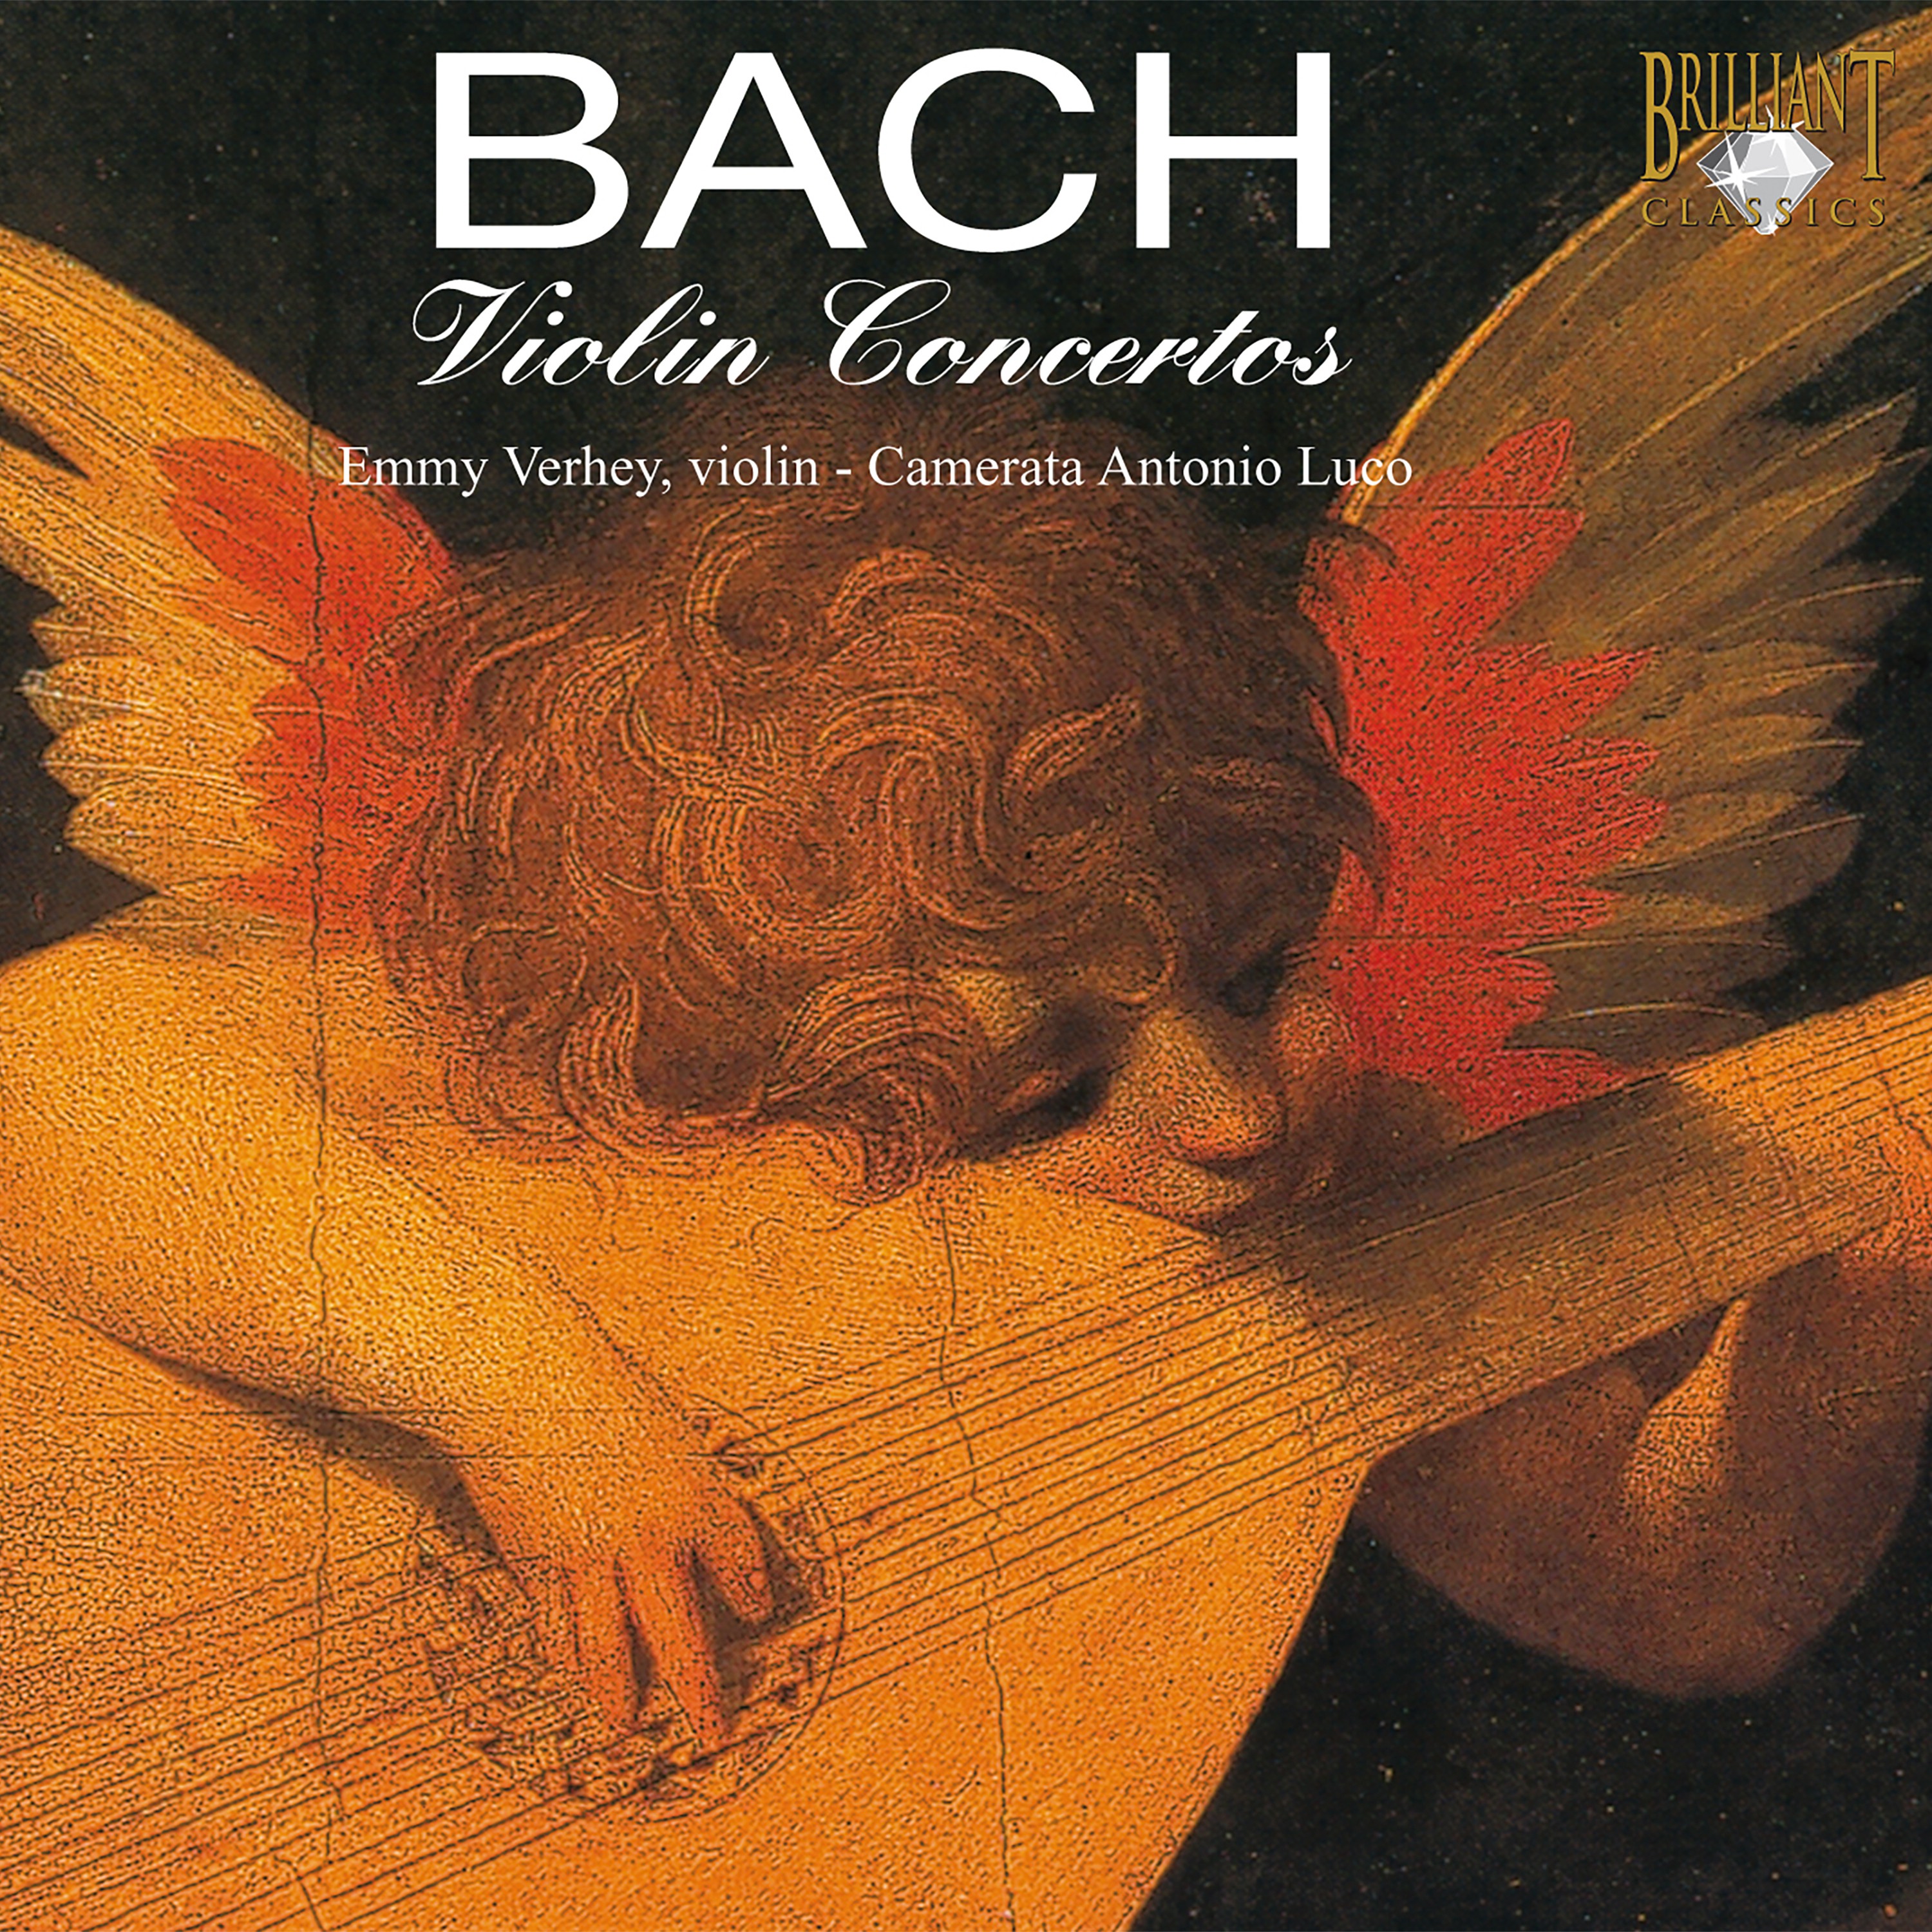 Violin Concerto in A Minor, BWV 1041: Allegro (2)